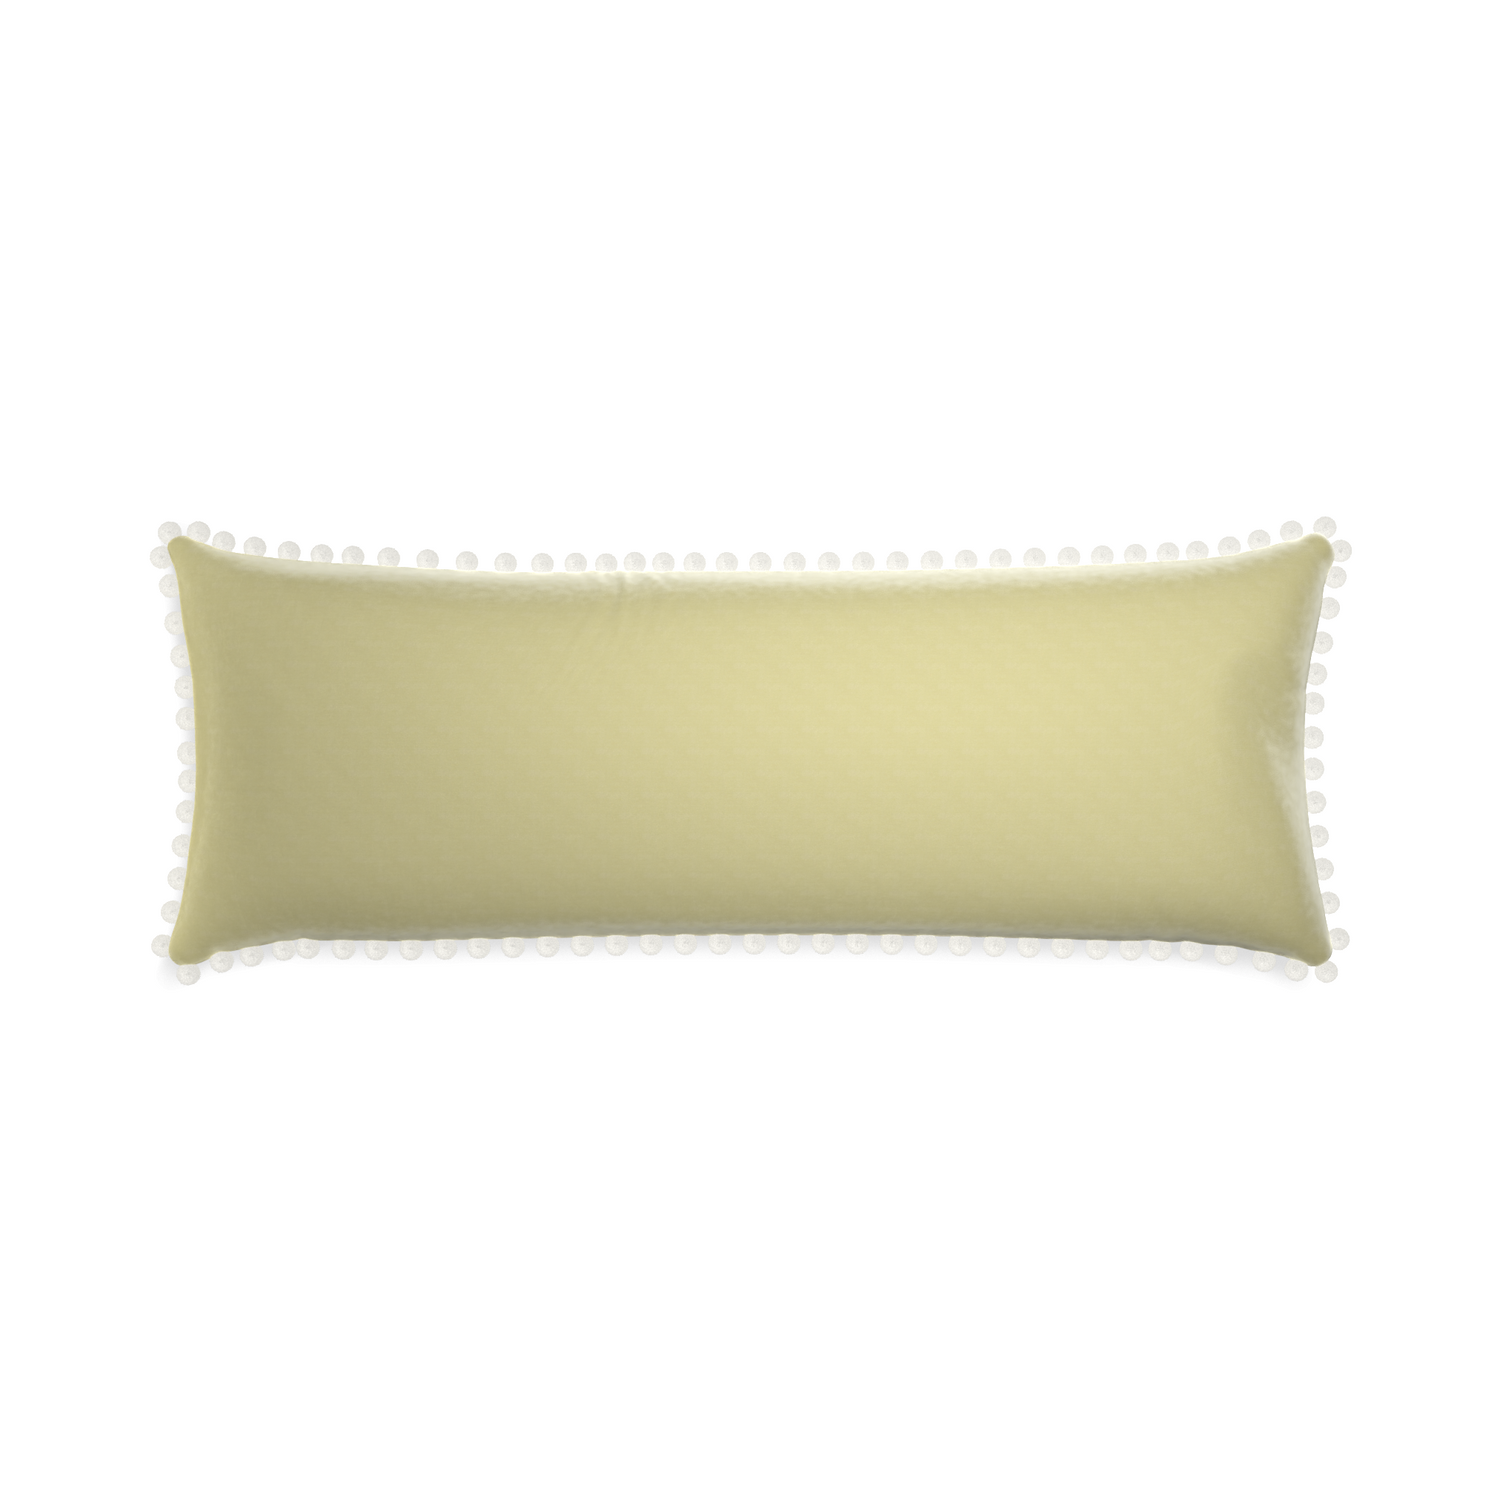 Xl-lumbar pear velvet custom pillow with snow pom pom on white background